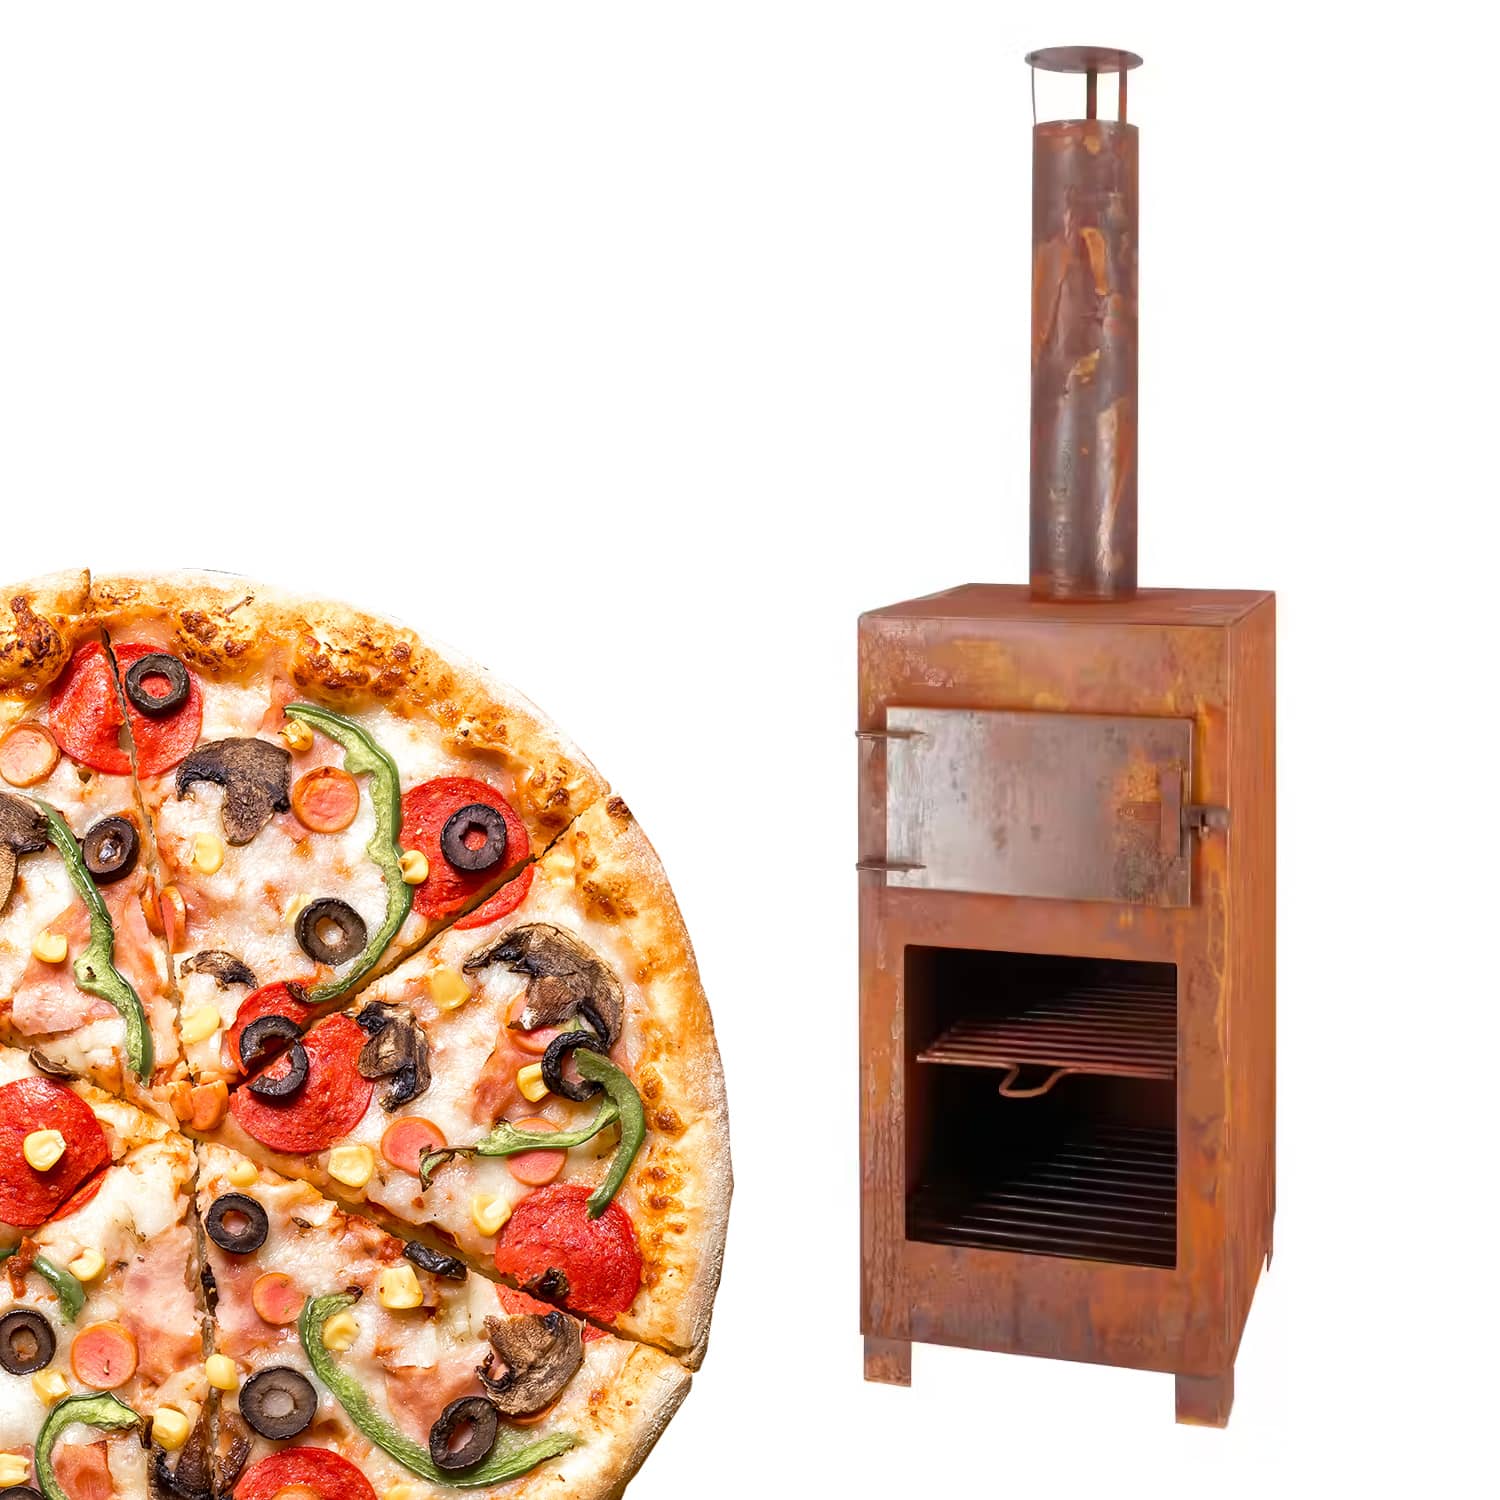 Deens nemen Beneden afronden Pizza oven + Terraskachel roestkleurig kopen? | Tuinhaardxxl